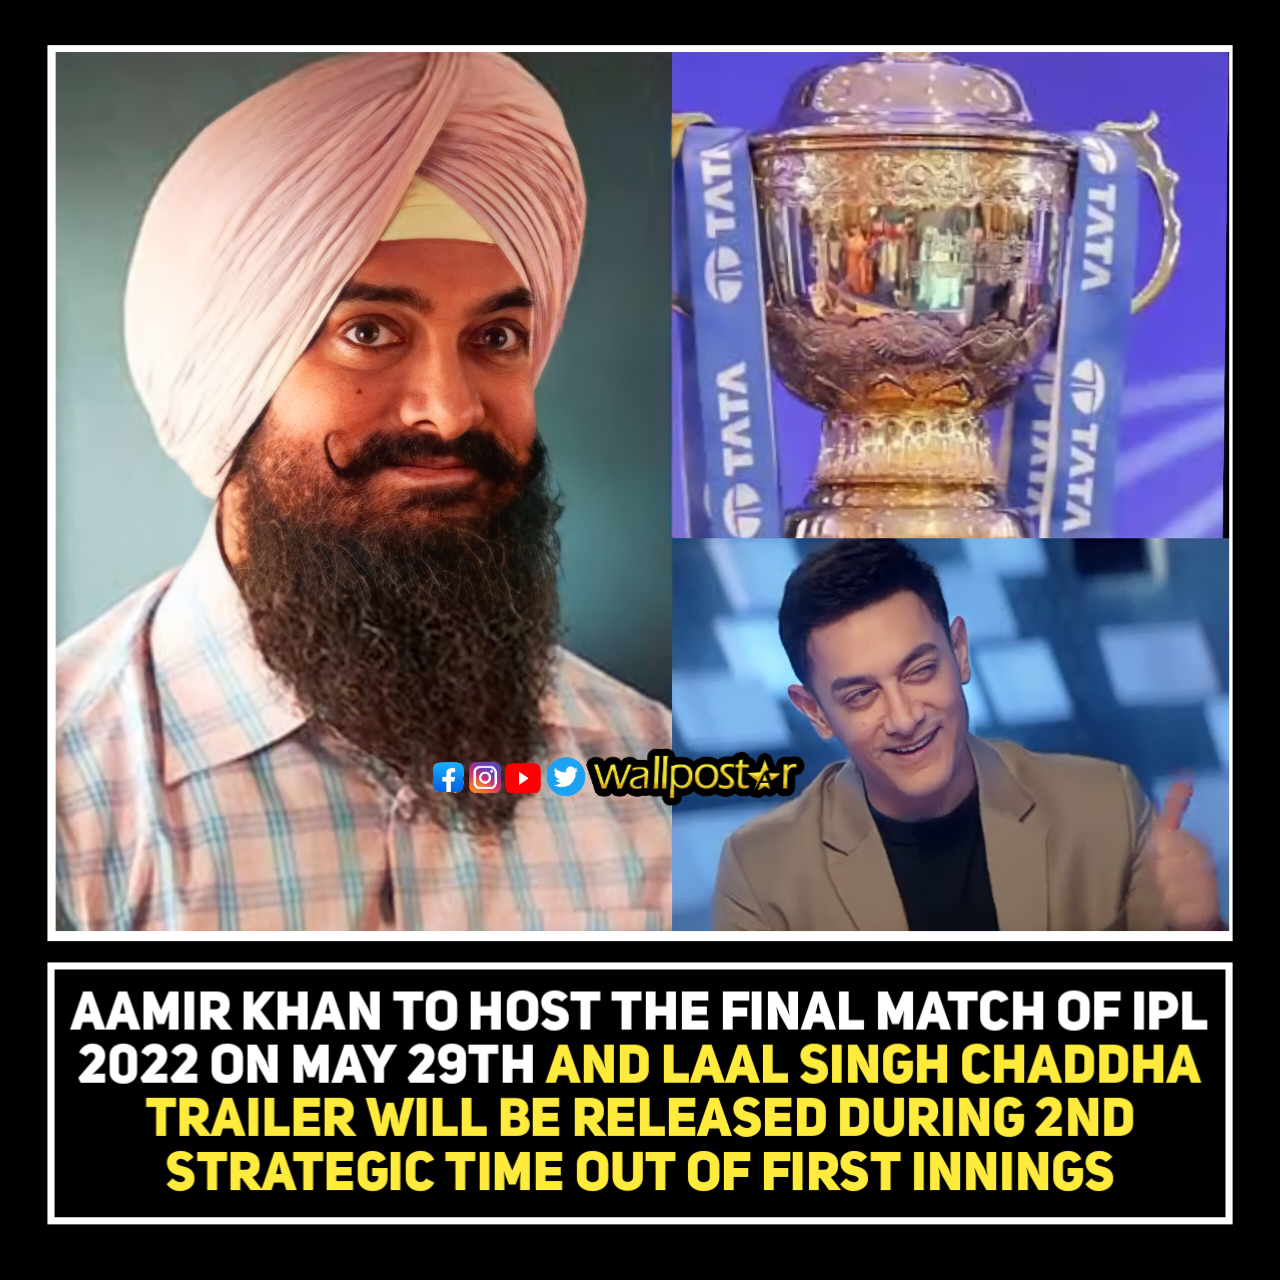 Aamir Khan to host the IPL final match